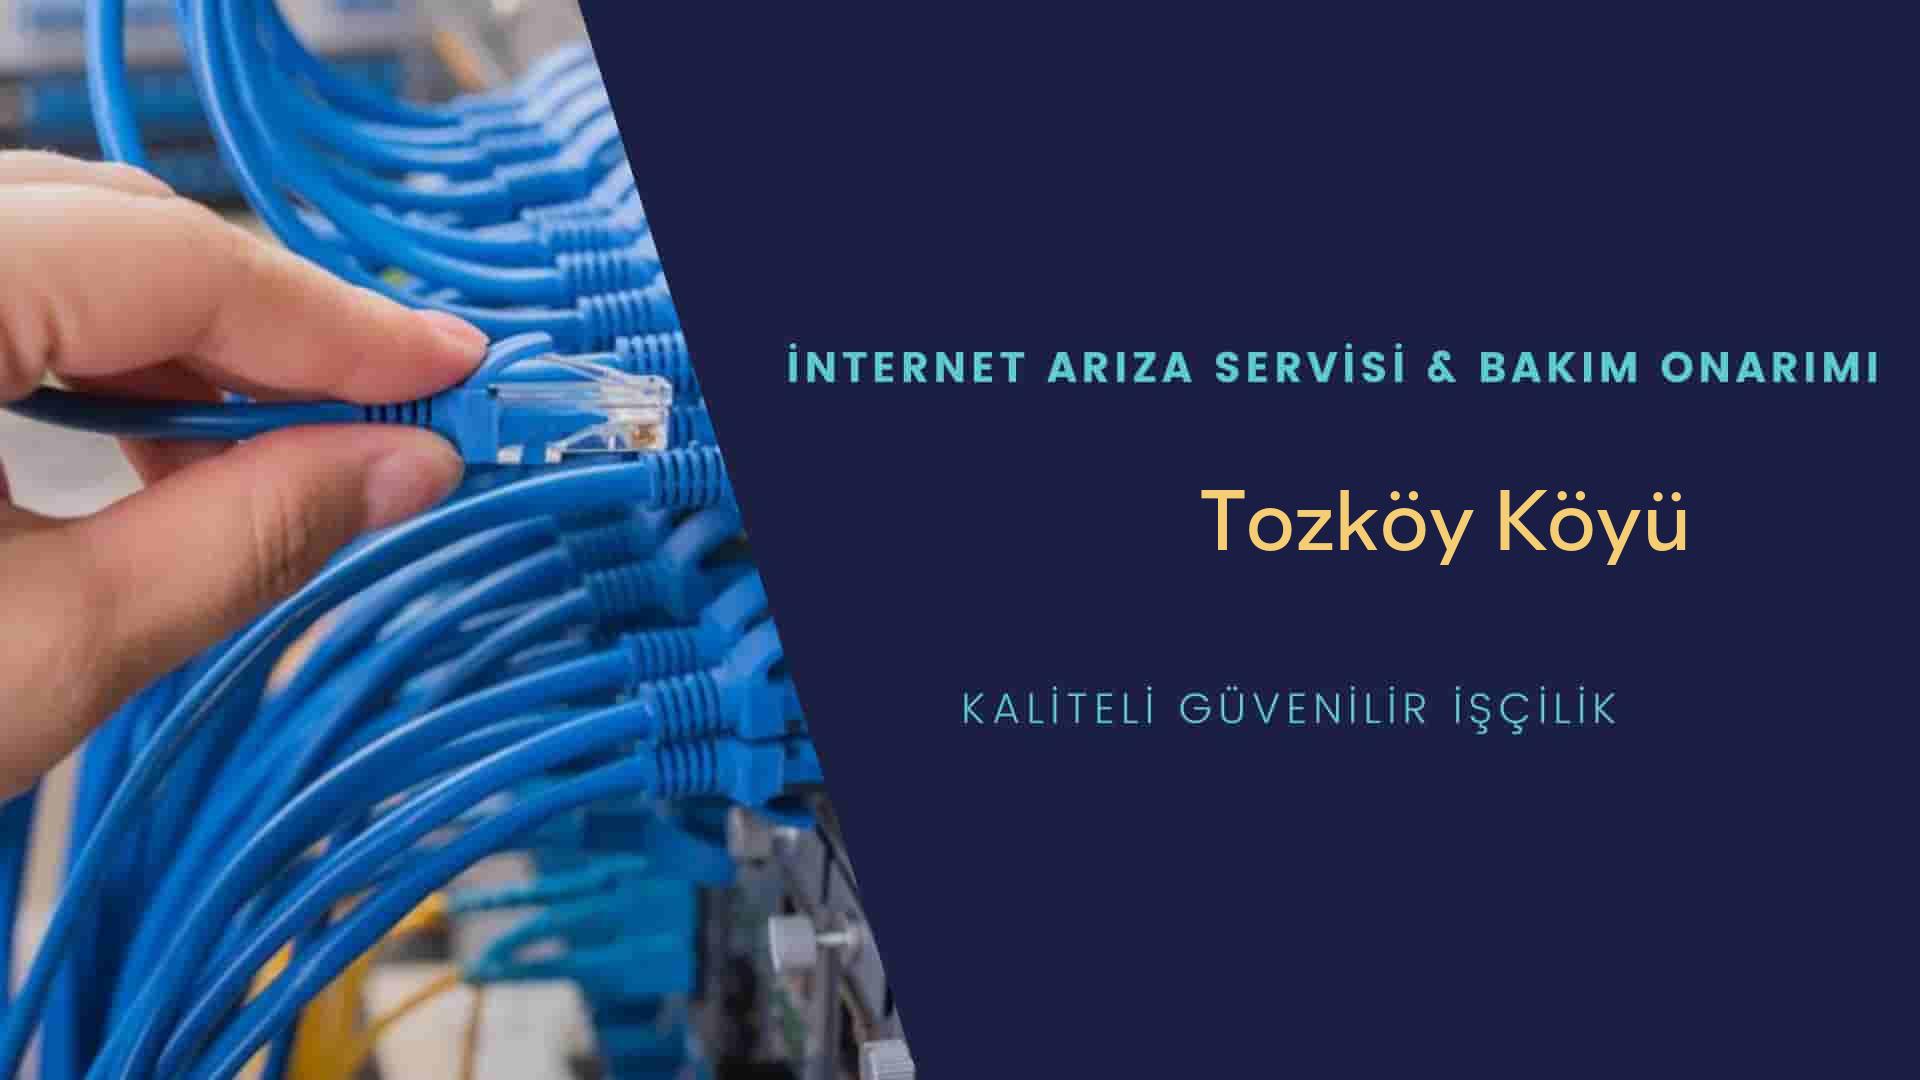 Tozköy Köyü internet kablosu çekimi yapan yerler veya elektrikçiler mi? arıyorsunuz doğru yerdesiniz o zaman sizlere 7/24 yardımcı olacak profesyonel ustalarımız bir telefon kadar yakındır size.